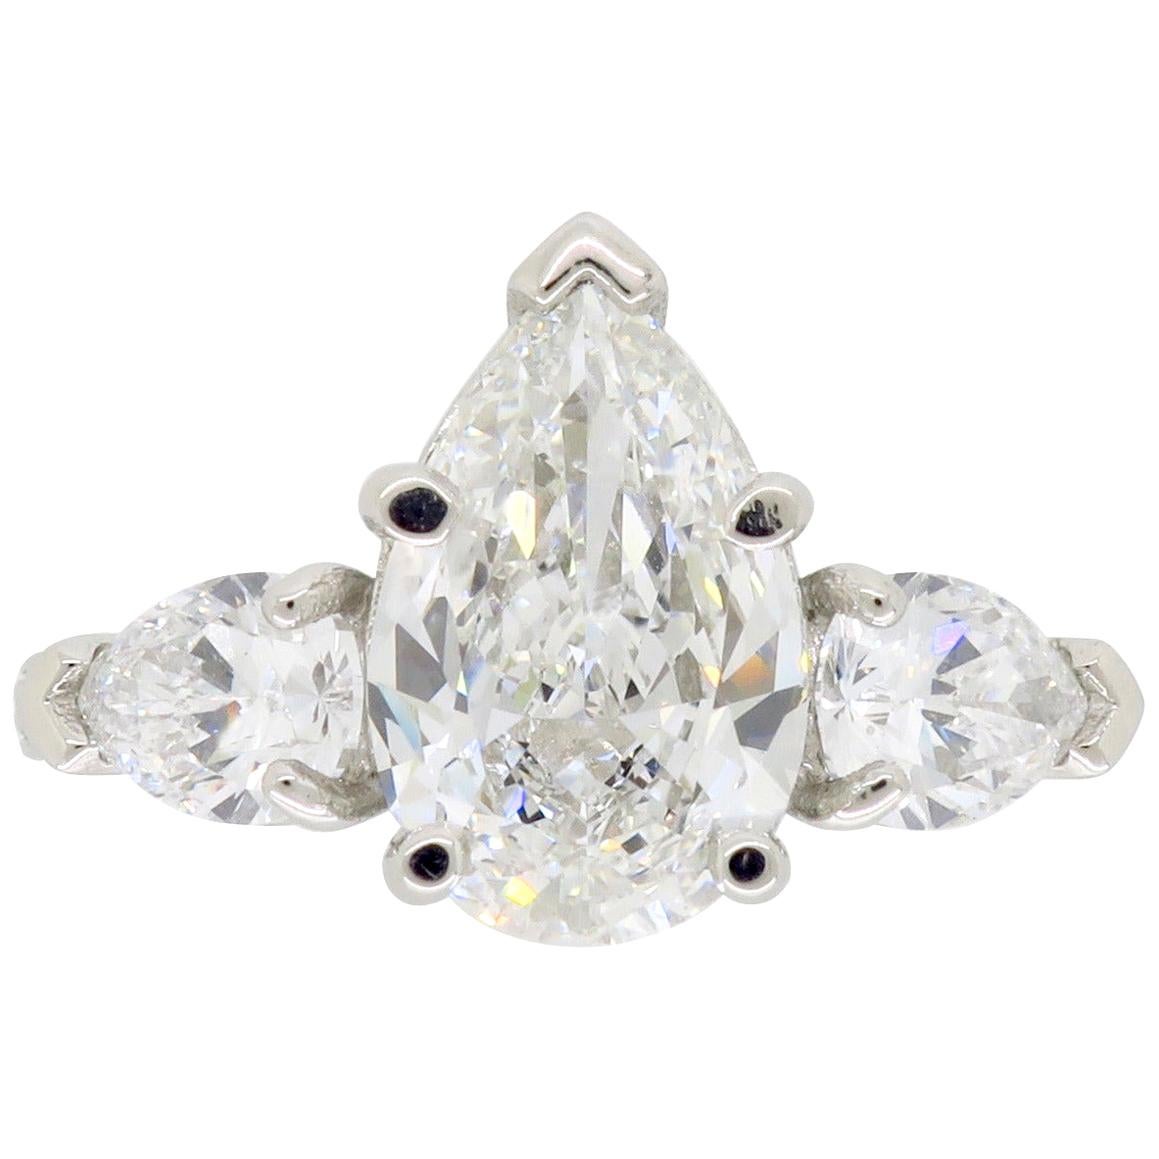 Platinum Sabet 3.21 Carat GIA Certified Pear Cut Diamond Engagement Ring